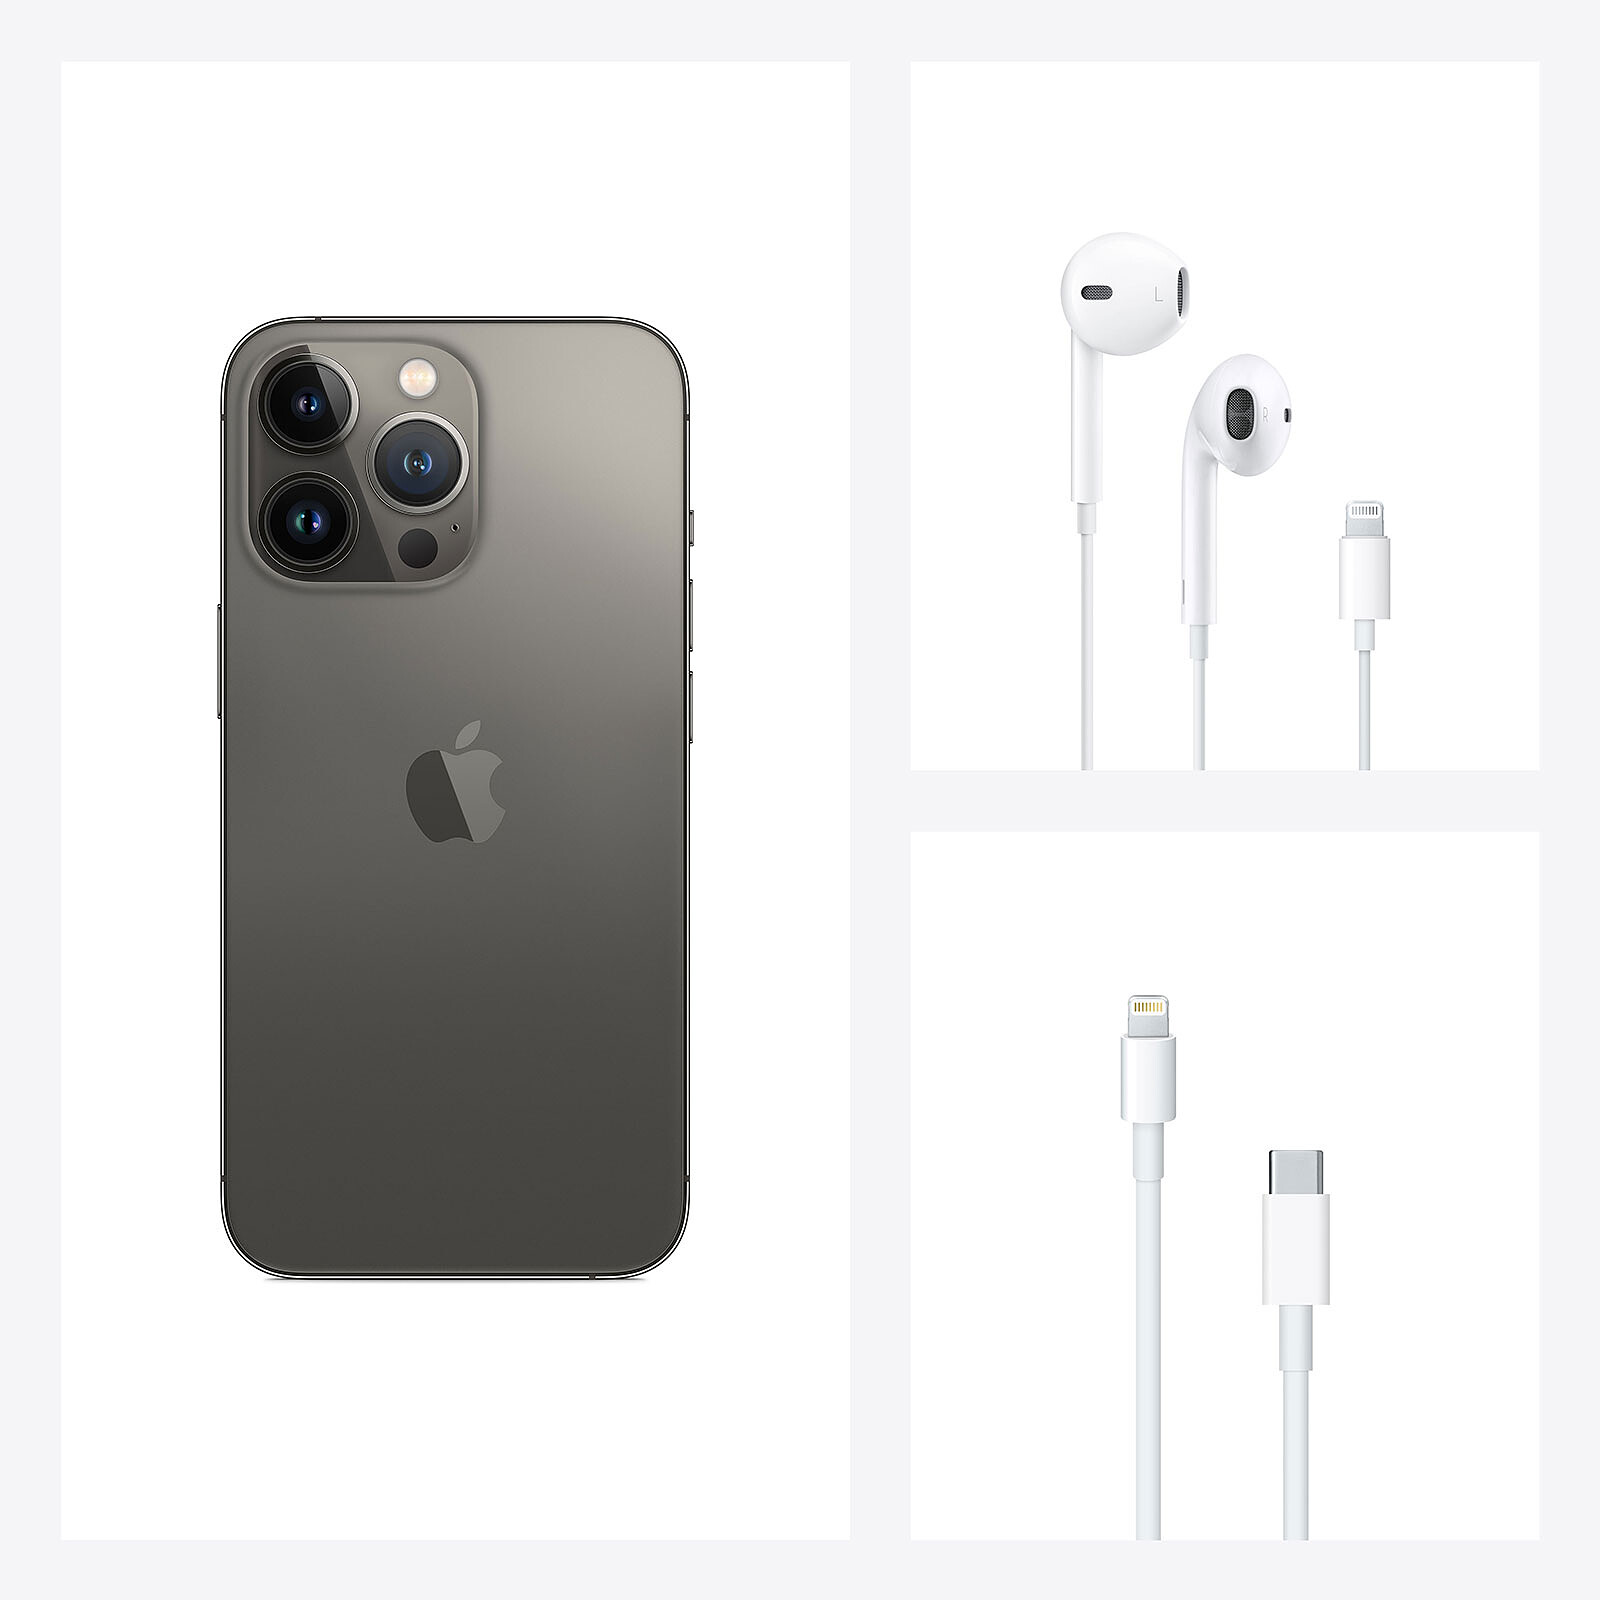 iPhone 12 : Apple pourrait retirer les écouteurs et le chargeur de la boite